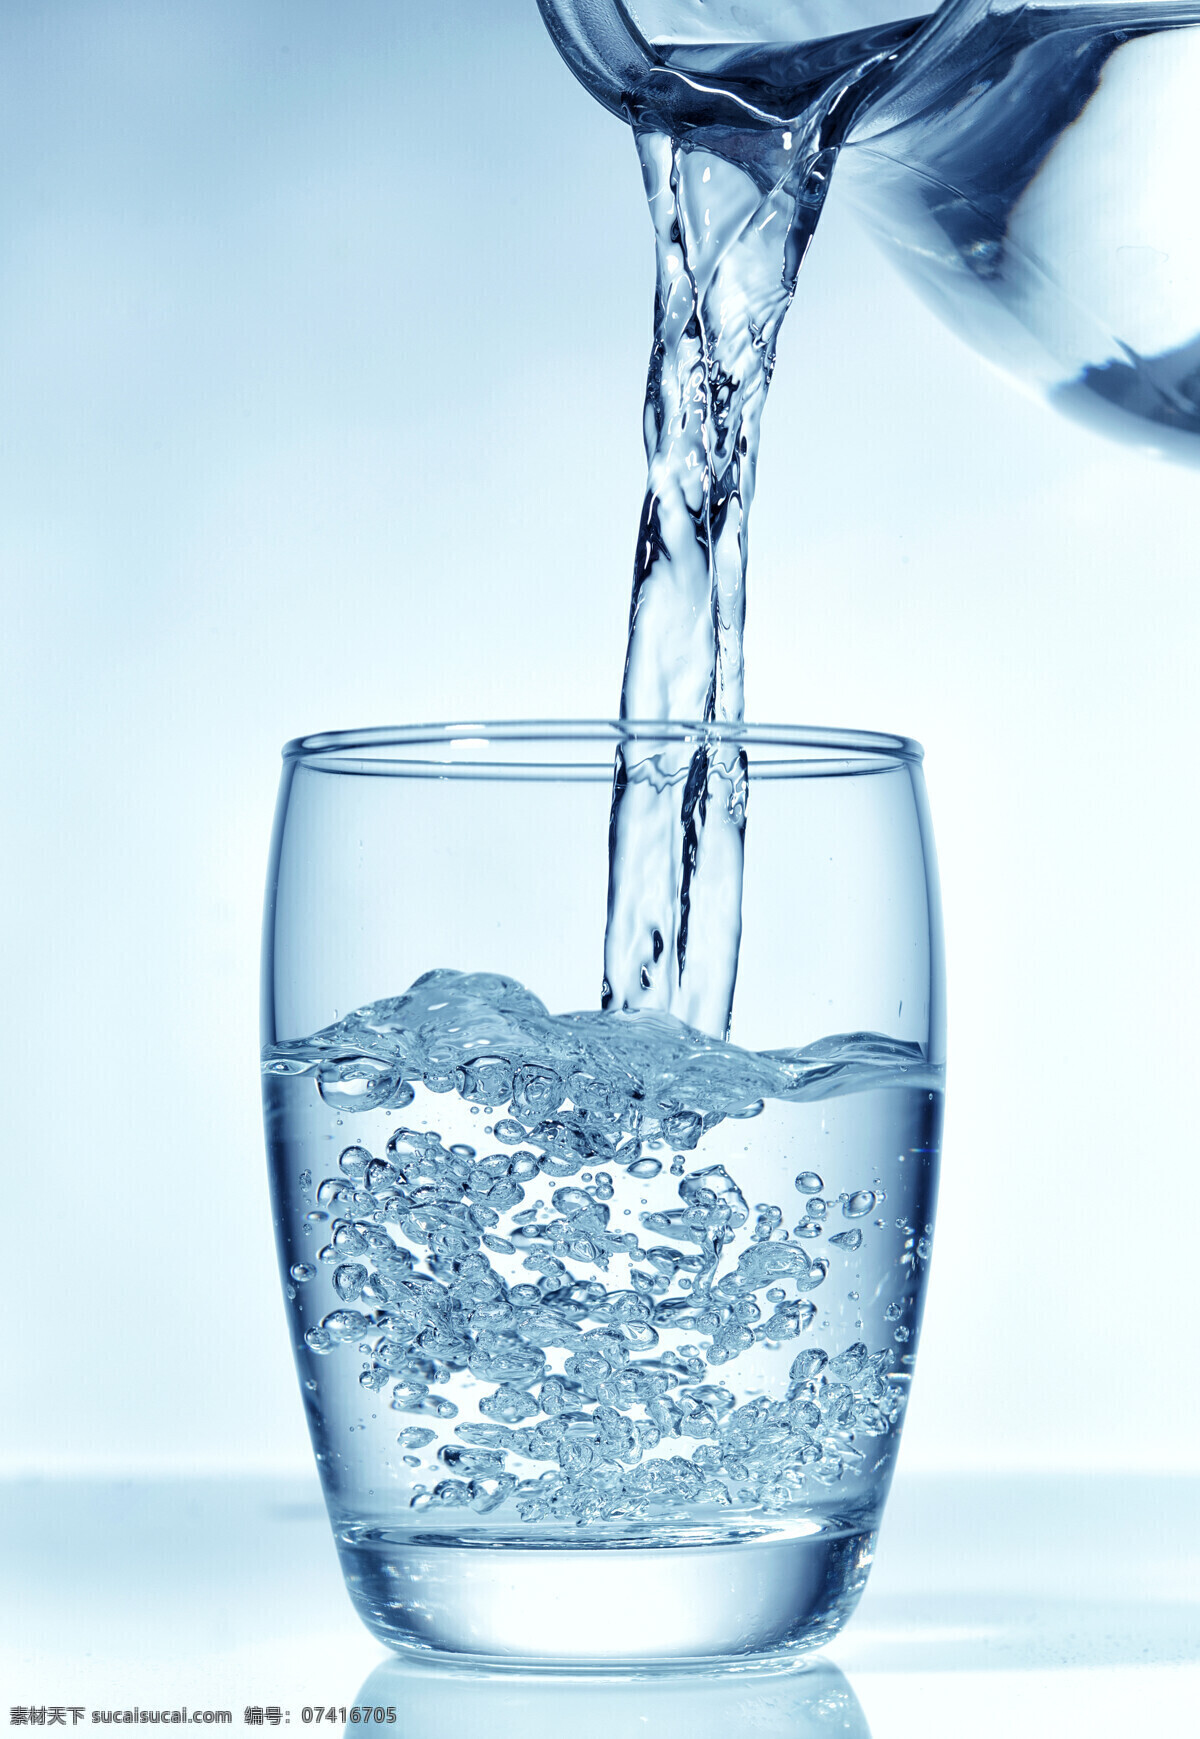 倒水 喝水 纯净水 矿泉水 瓶装水 饮用水 生命之水 饮水 水 饮料酒水 餐饮美食